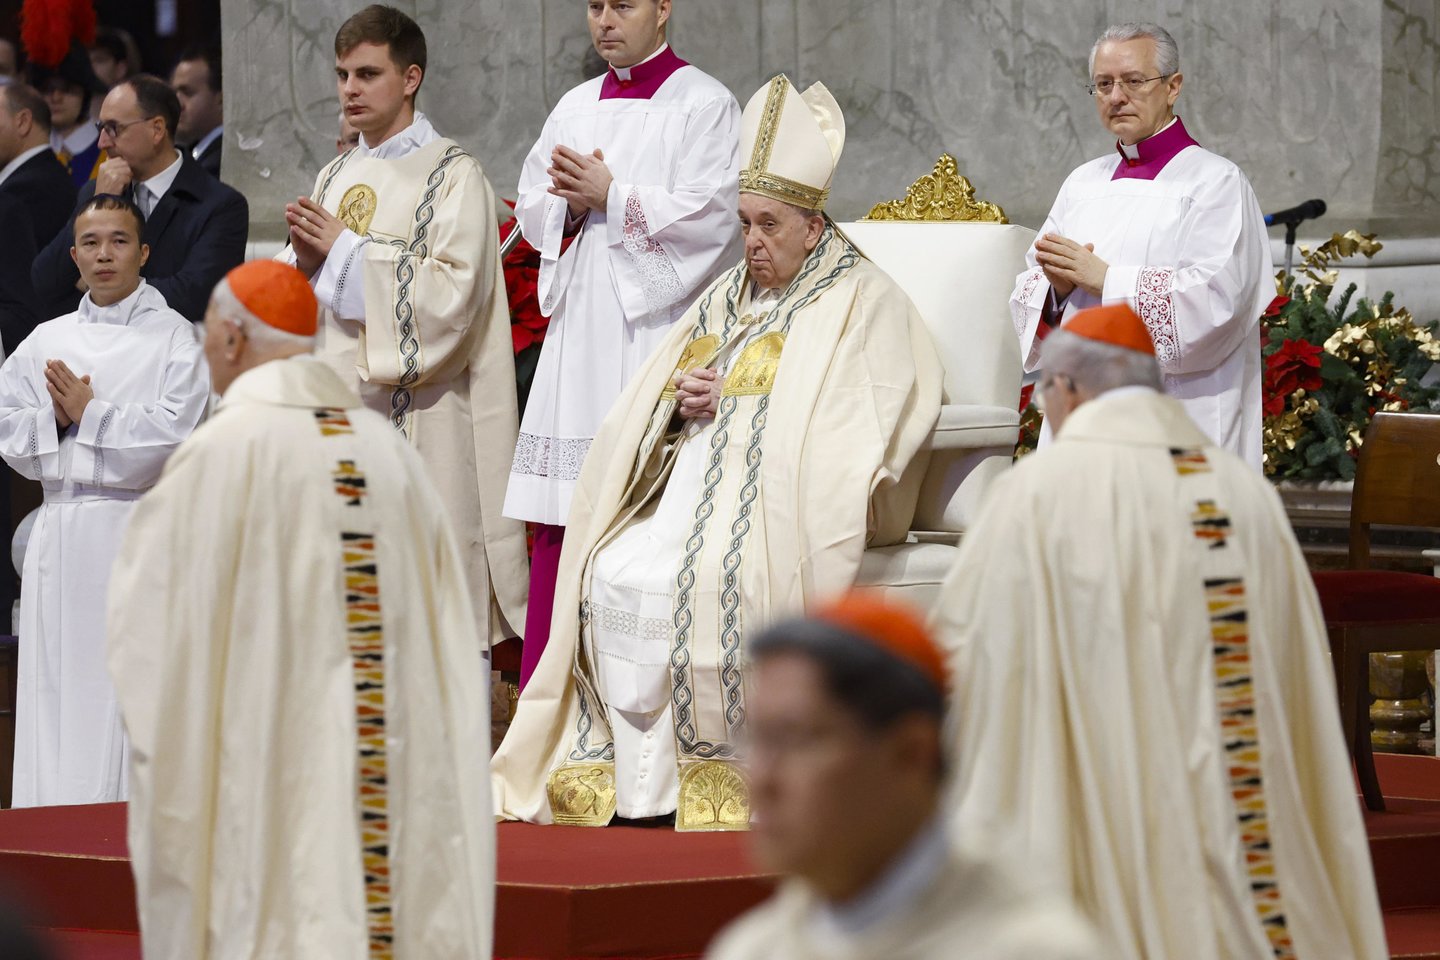 ​Popiežius Pranciškus, sekmadienį vadovaudamas Švč. Mergelės Marijos, Dievo Gimdytojos, iškilmės ir Pasaulinės taikos dienos mišioms Šv. Petro bazilikoje, meldėsi už diena anksčiau mirusį popiežių emeritą Benediktą XVI.<br>Zuma Press/Scanpix nuotr.